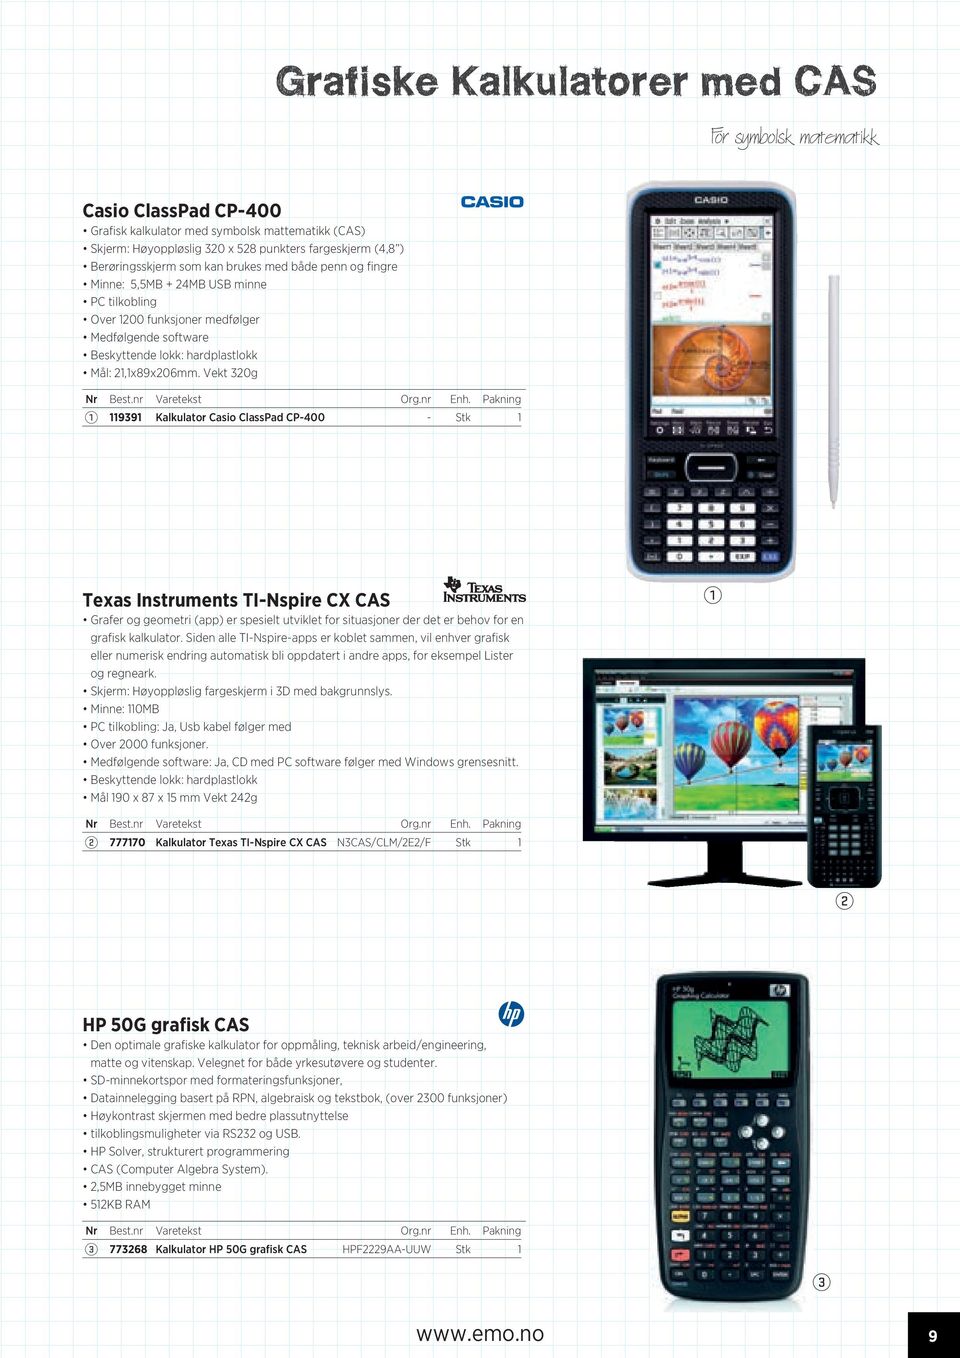 Vekt 0g 99 Kalkulator Casio ClassPad CP-400 - Stk Texas Instruments TI-Nspire CX CAS Grafer og geometri (app) er spesielt utviklet for situasjoner der det er behov for en grafisk kalkulator.